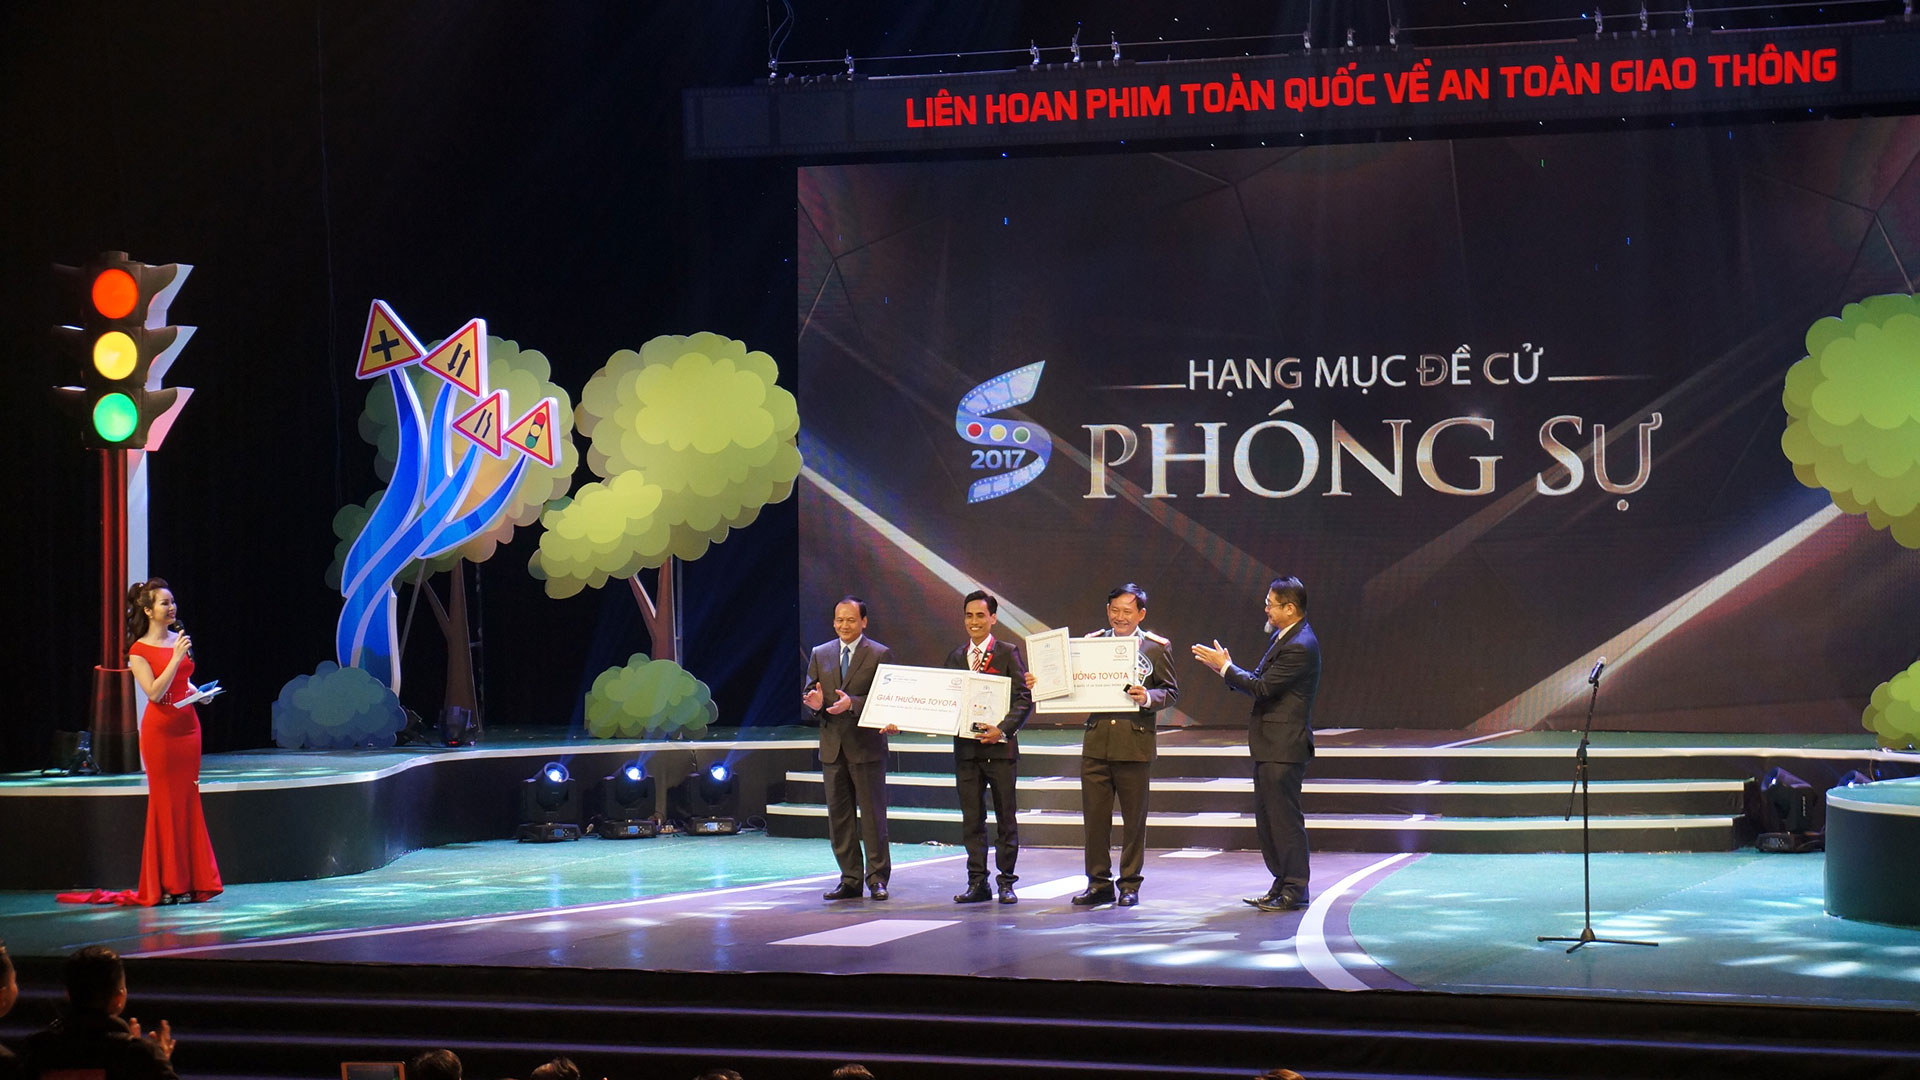 Lễ trao giải LHP toàn quốc về ATGT sắp diễn ra tại Hà Nội